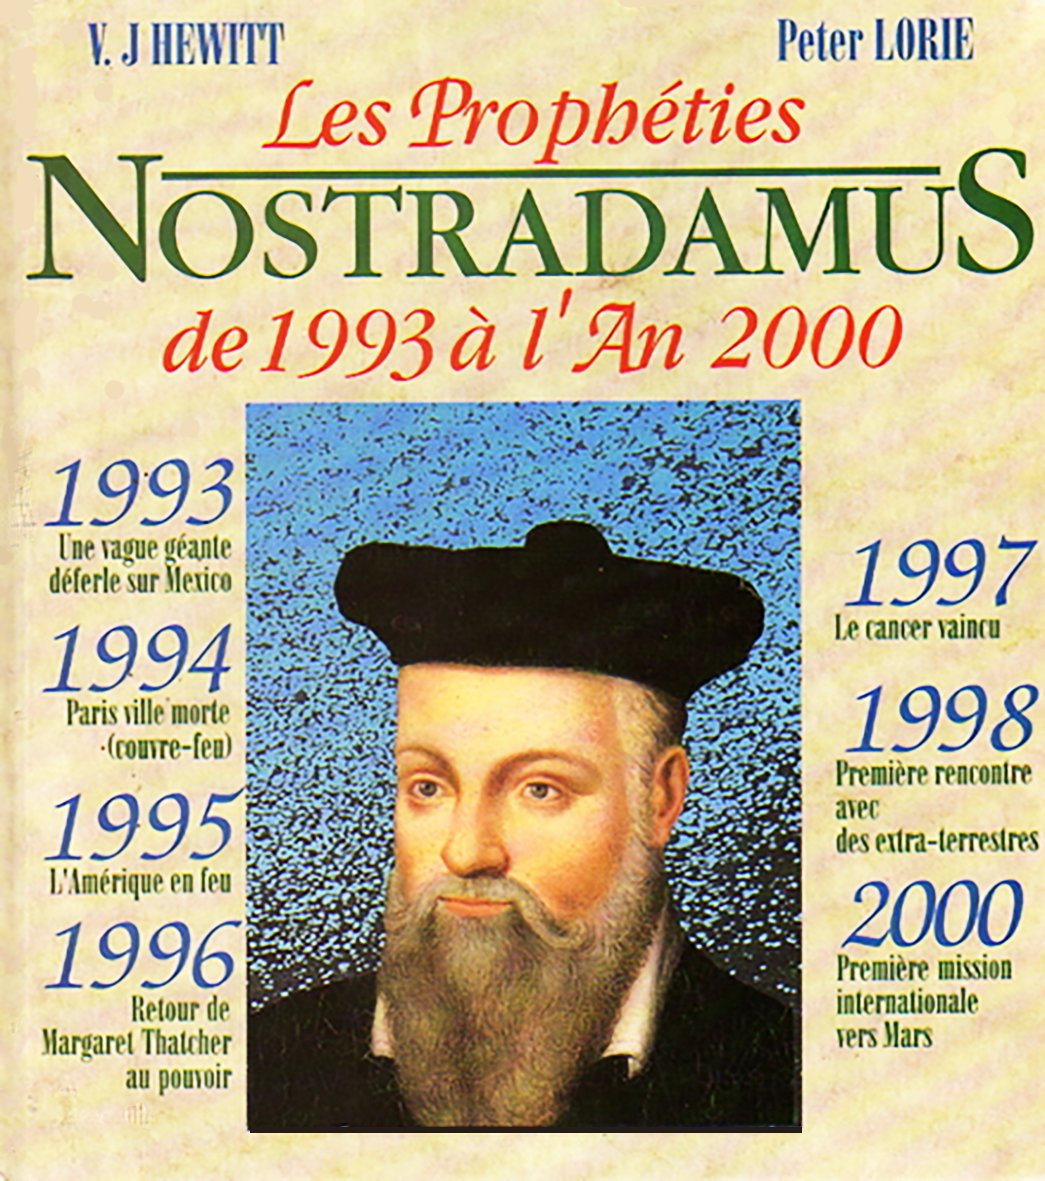 Les prophéties de Nostradamus de 1993 à l'an 2000 - V.J. Hewitt